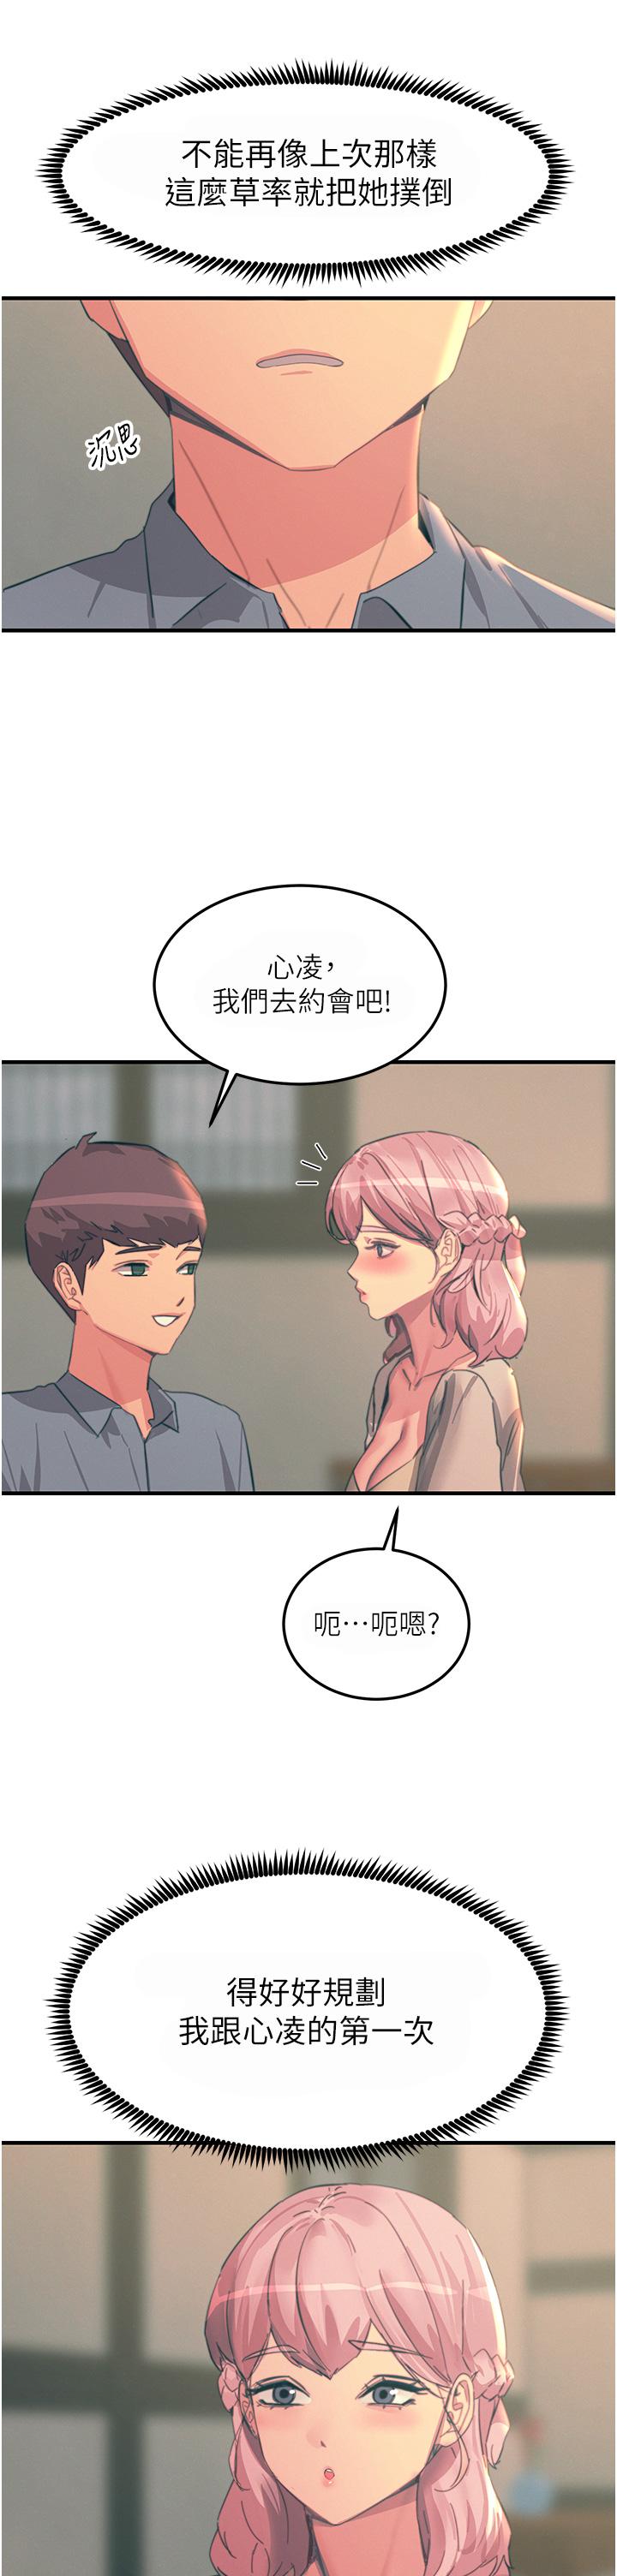 韩国污漫画 觸電大師 第69话-根治阴气的方法 29